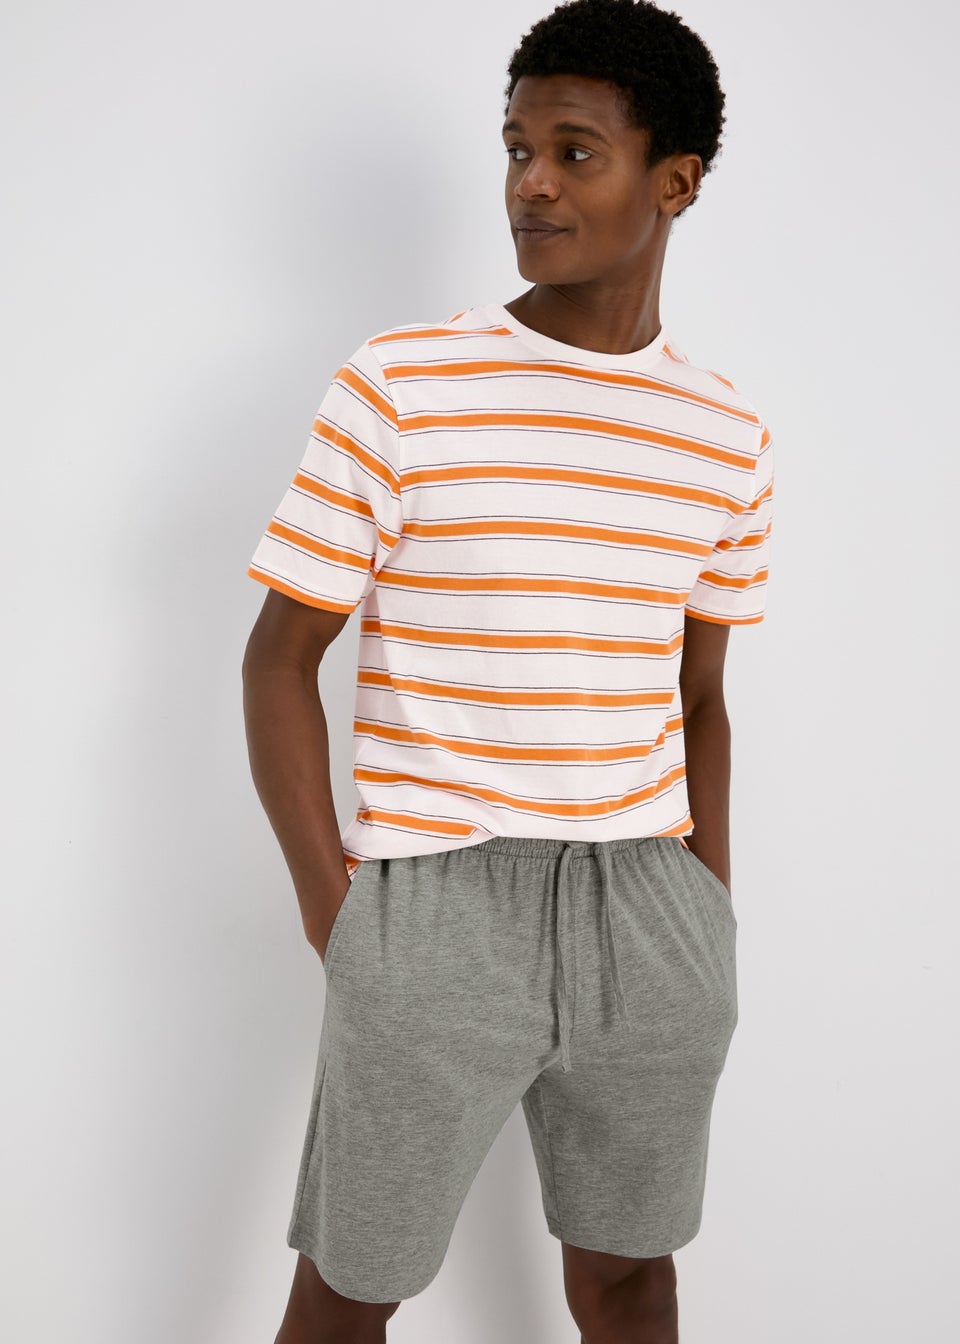 Orange Stripe Short Pyjama Set